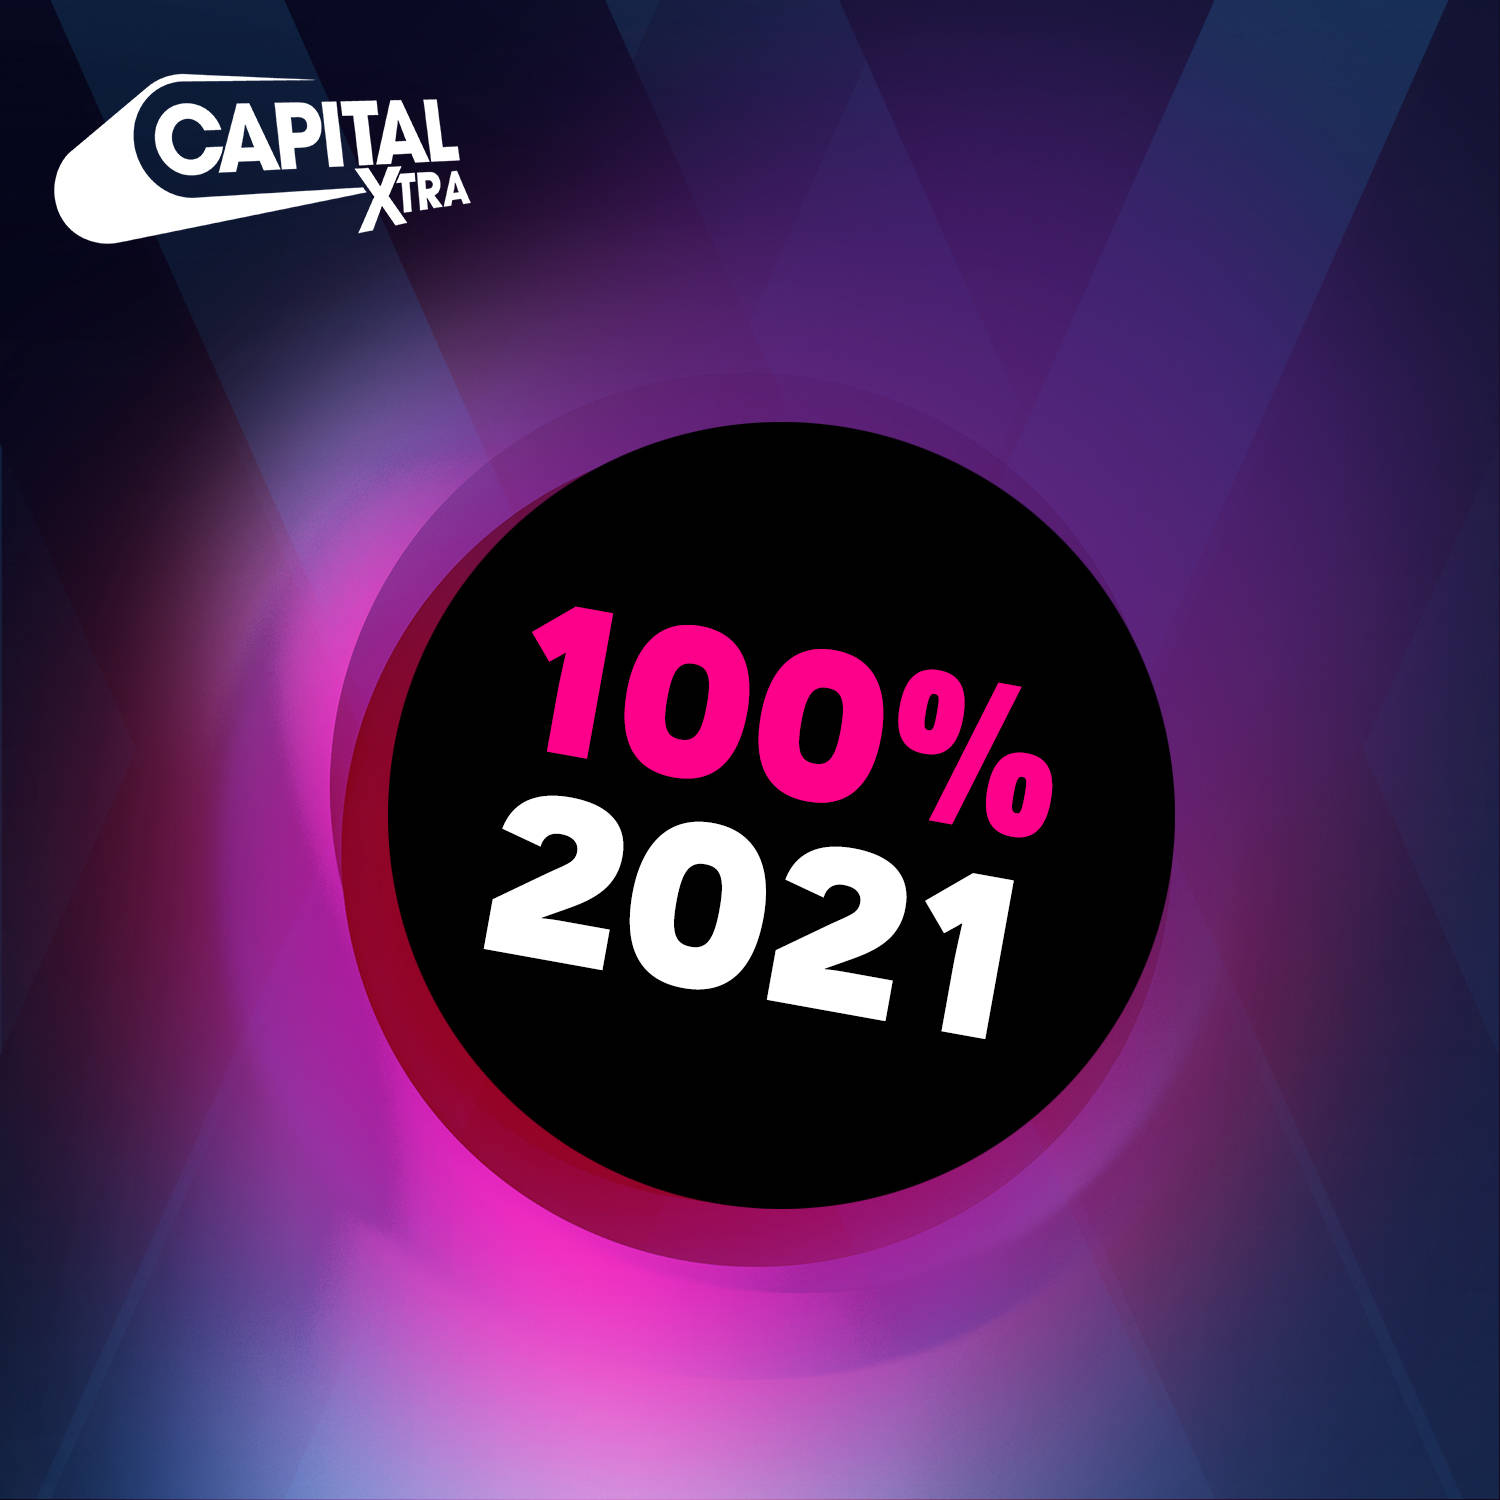 Capital XTRA 100% 2021 image